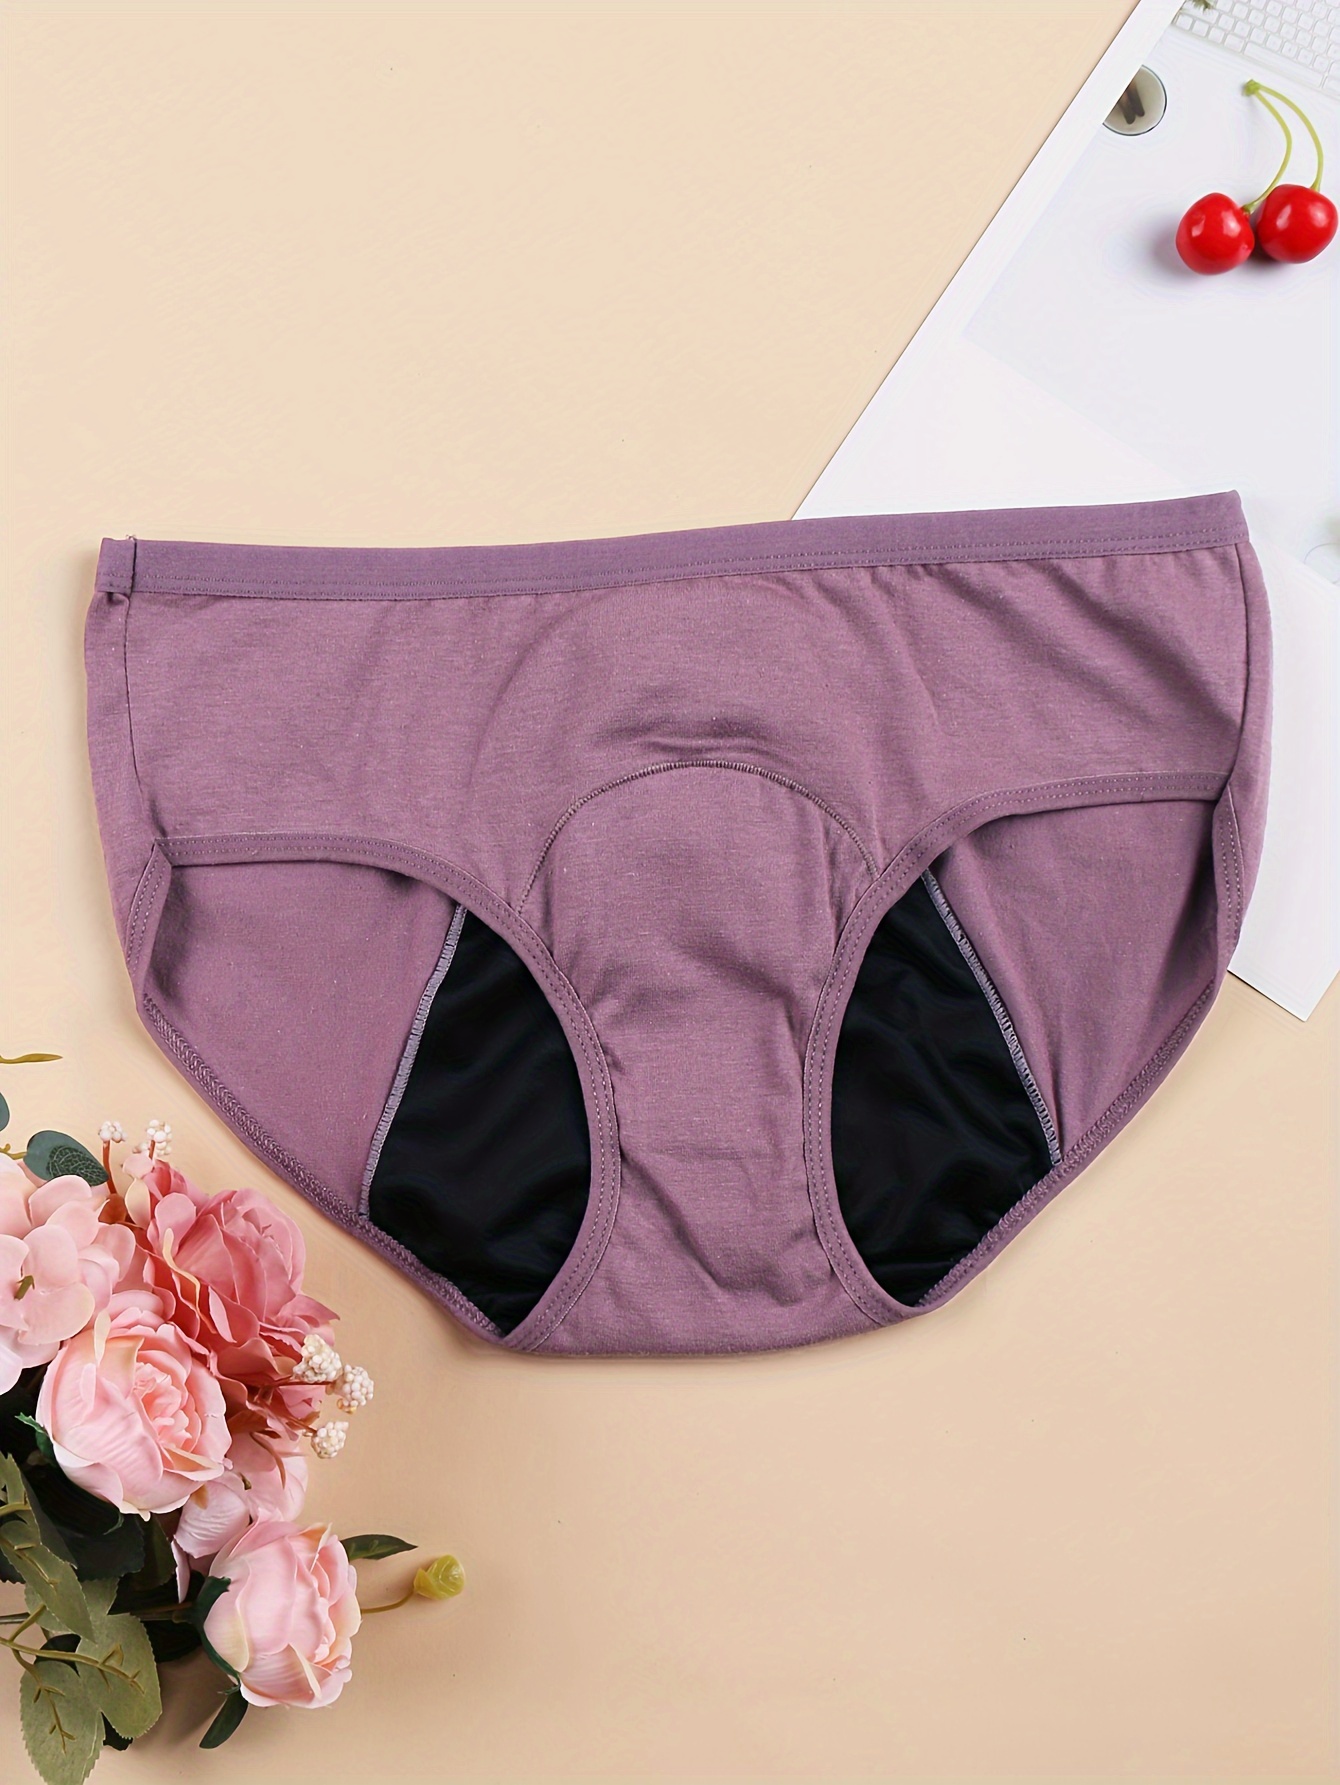 6pcs Period Underwear,Period Underwear for Women,Menstrual